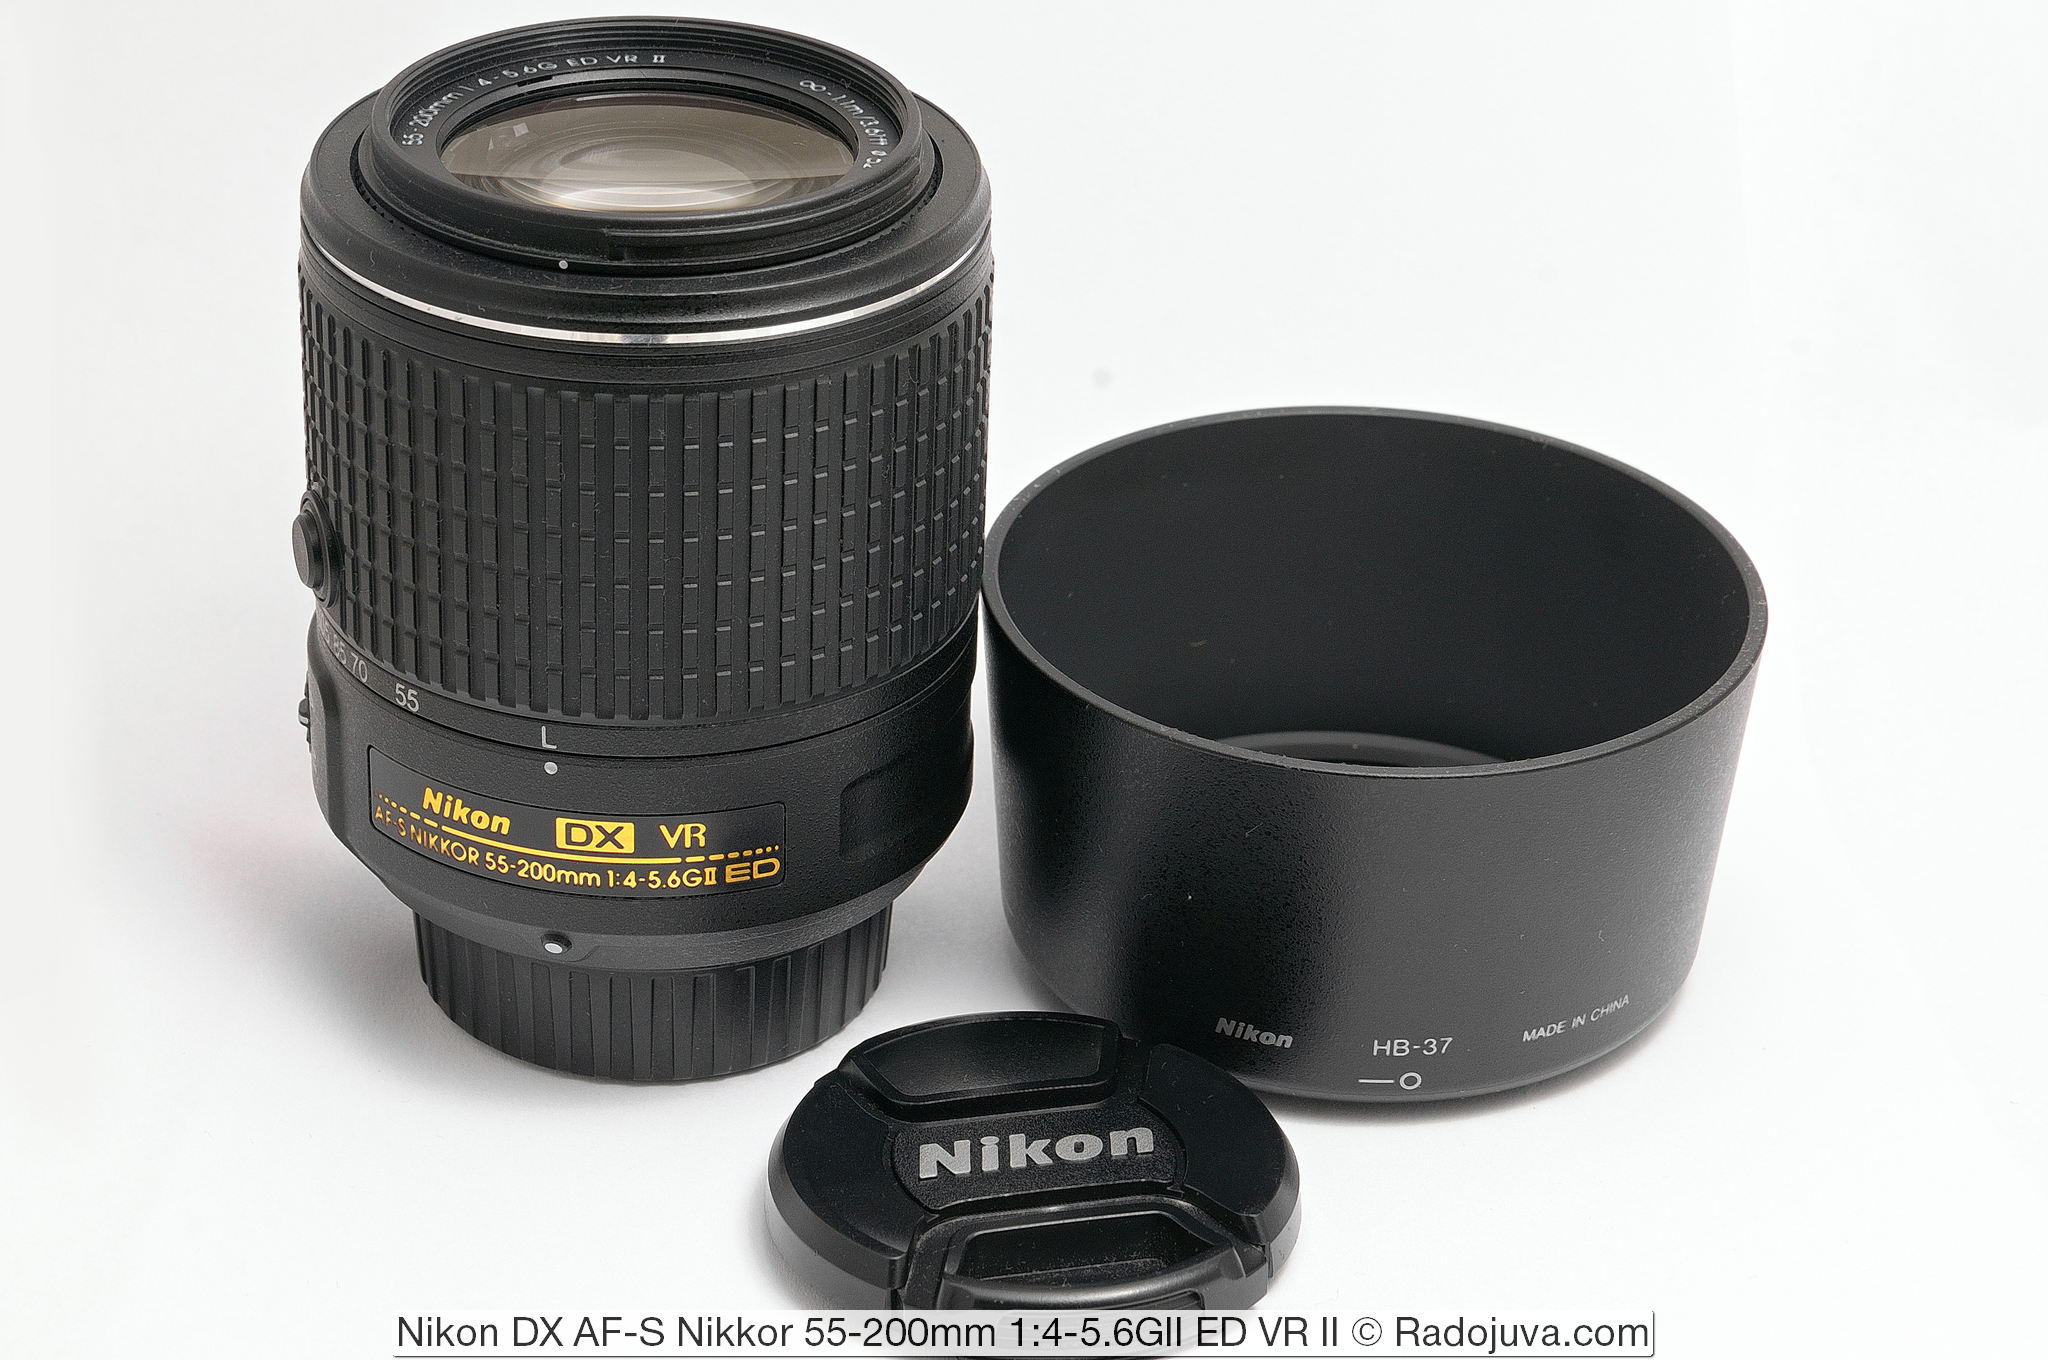 Nikon DX AF-S Nikkor 55-200mm 1: 4-5.6GII ED VR II